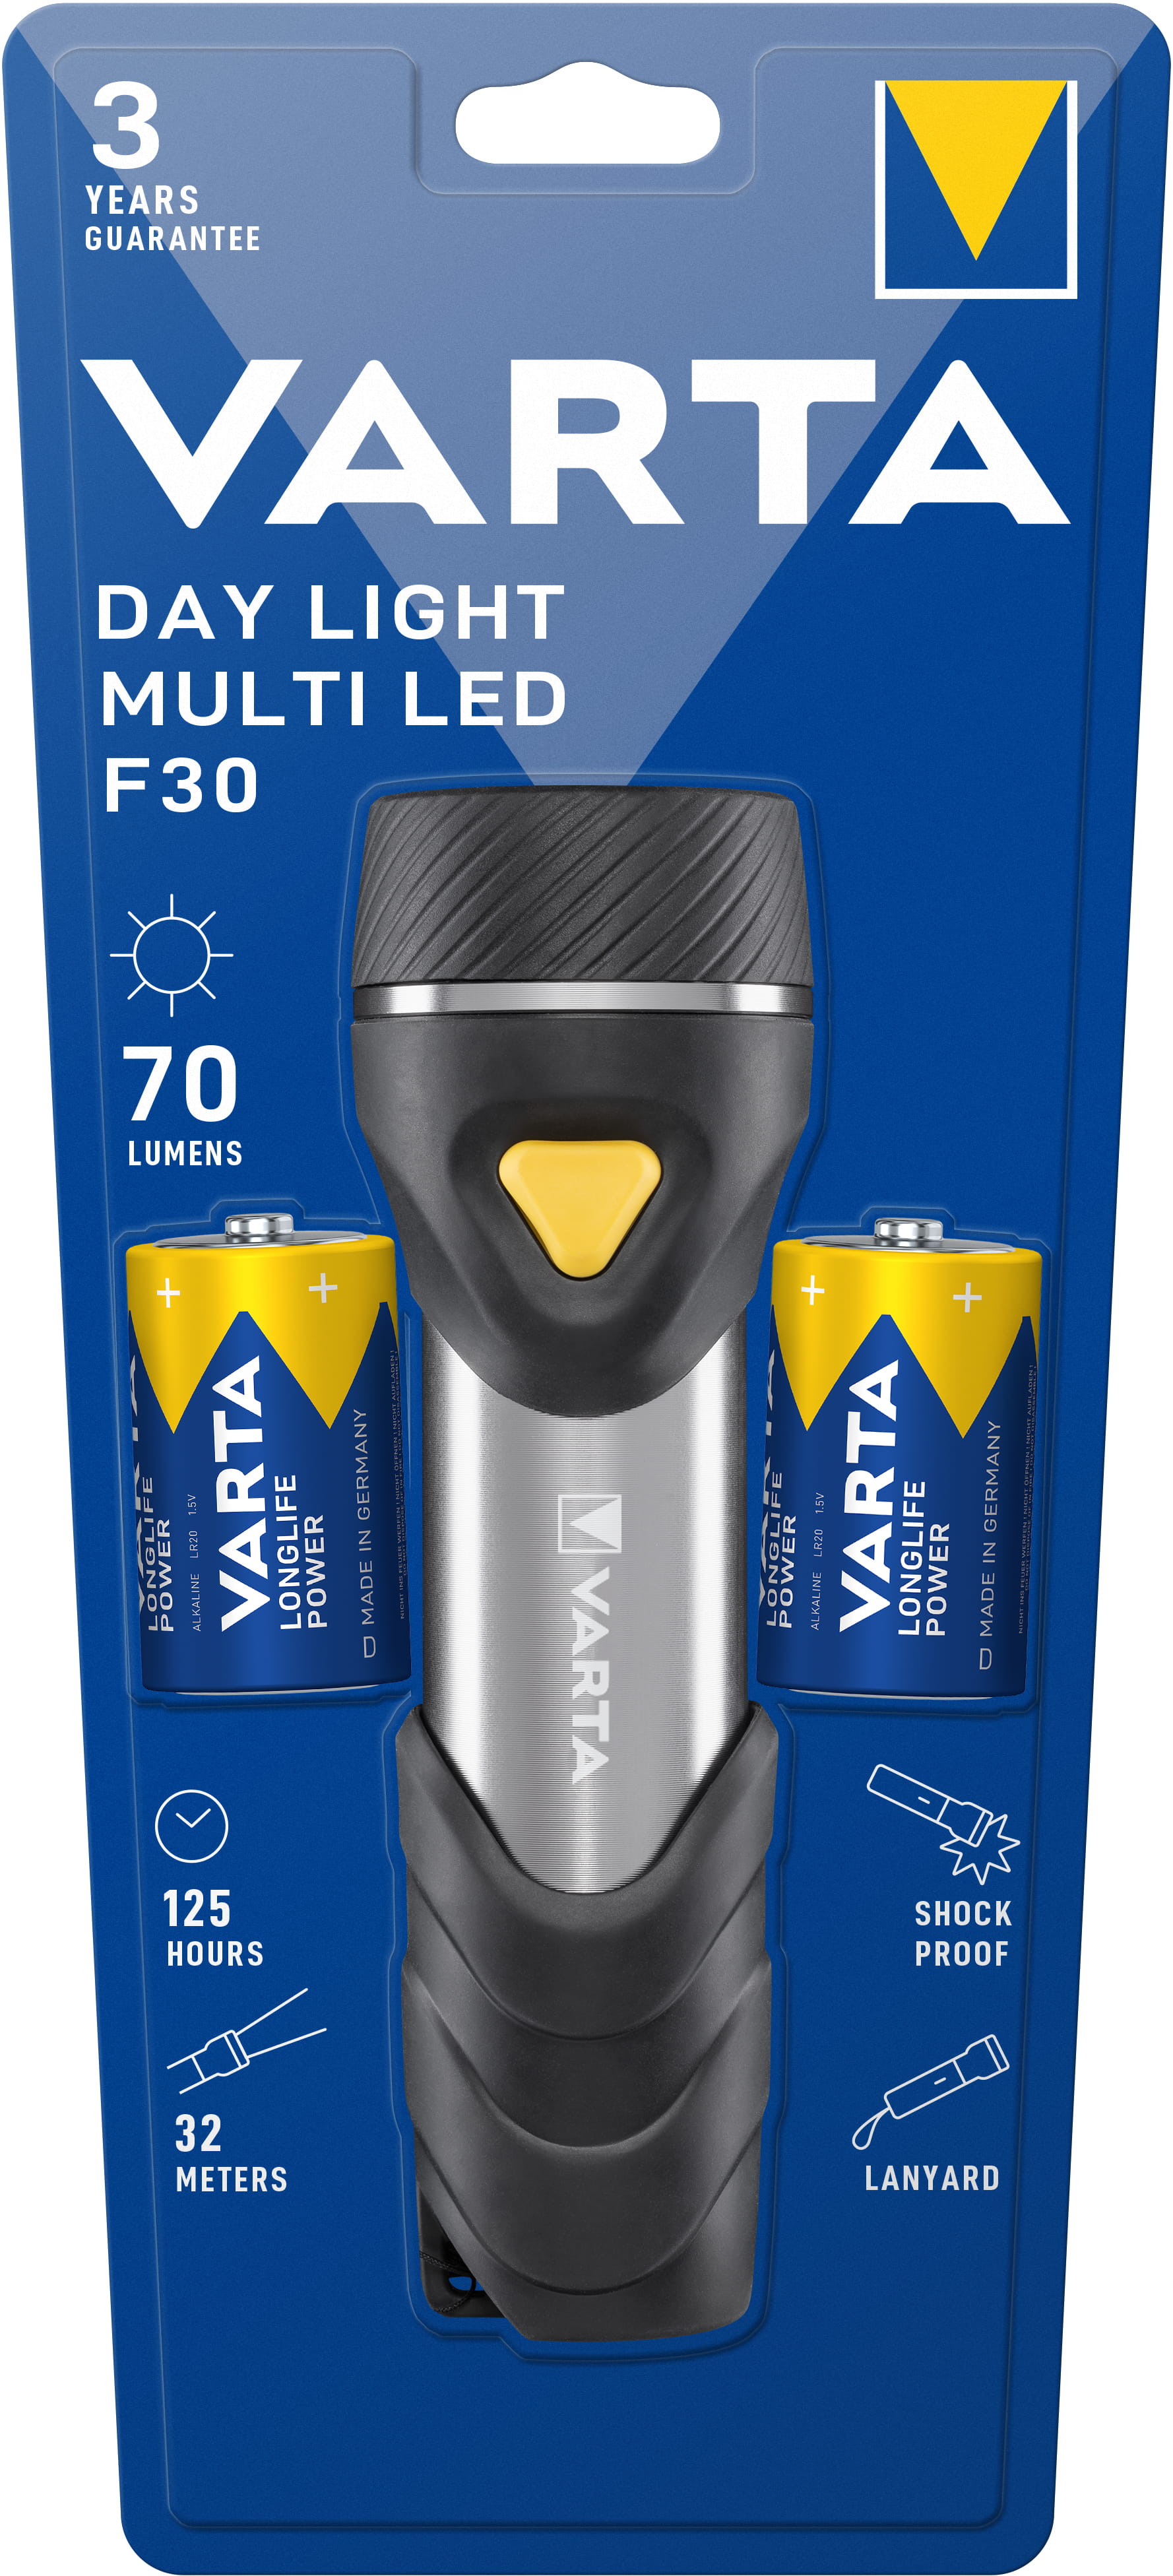 Varta Day Light Multi LED F30 - Taschenlampe